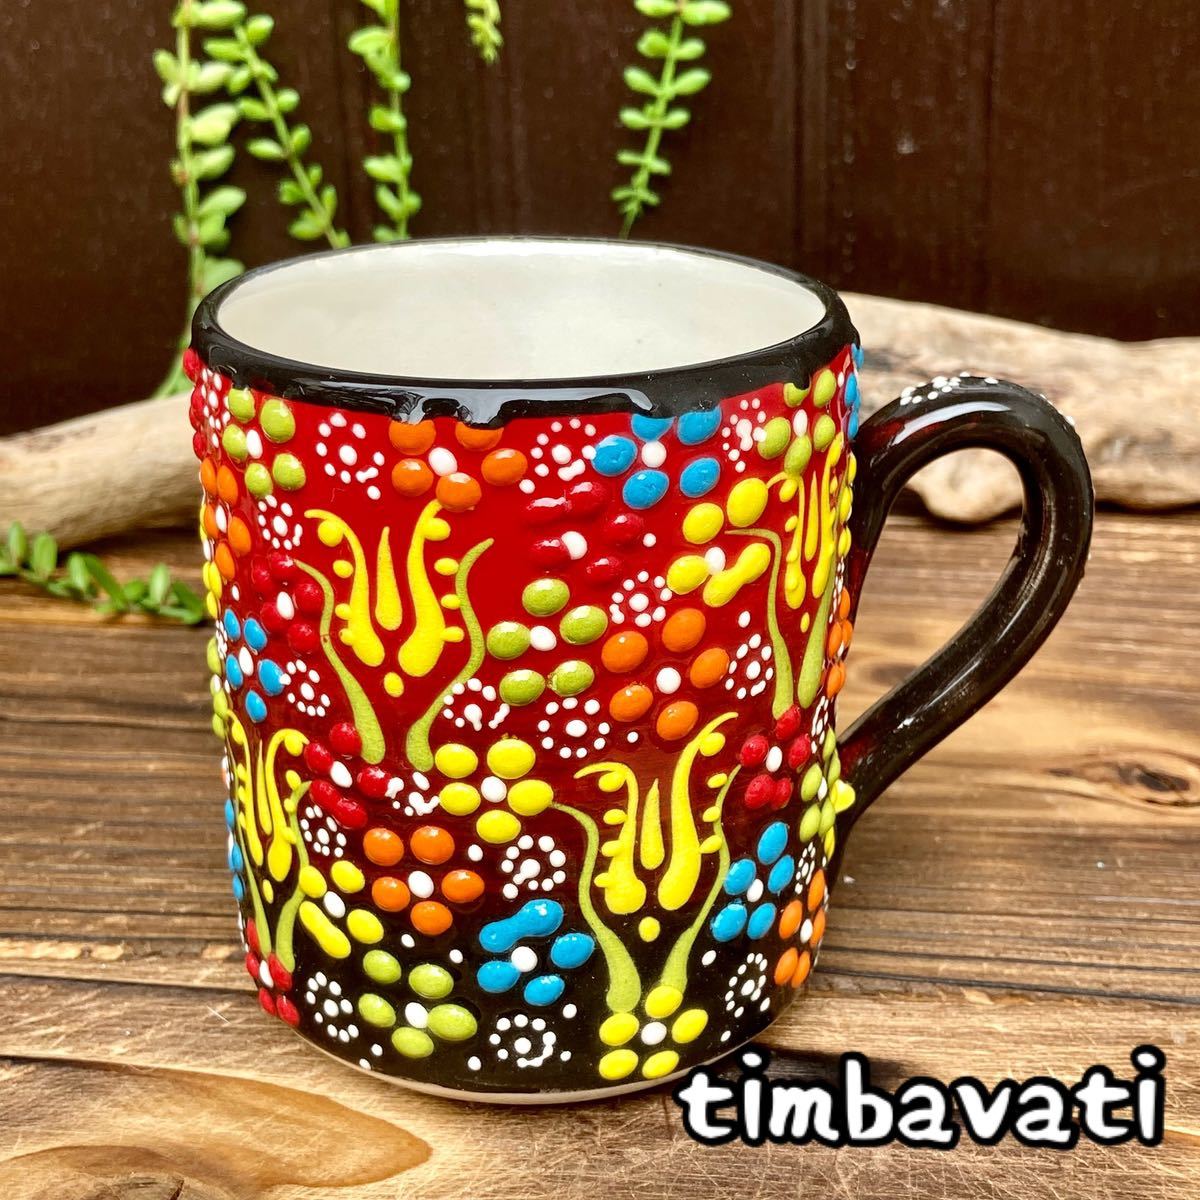 ☆Nuevo☆Taza de cerámica turca *roja* Cerámica Kutahya hecha a mano [Envío gratuito bajo ciertas condiciones] 157, utensilios de té, Taza, Cerámico